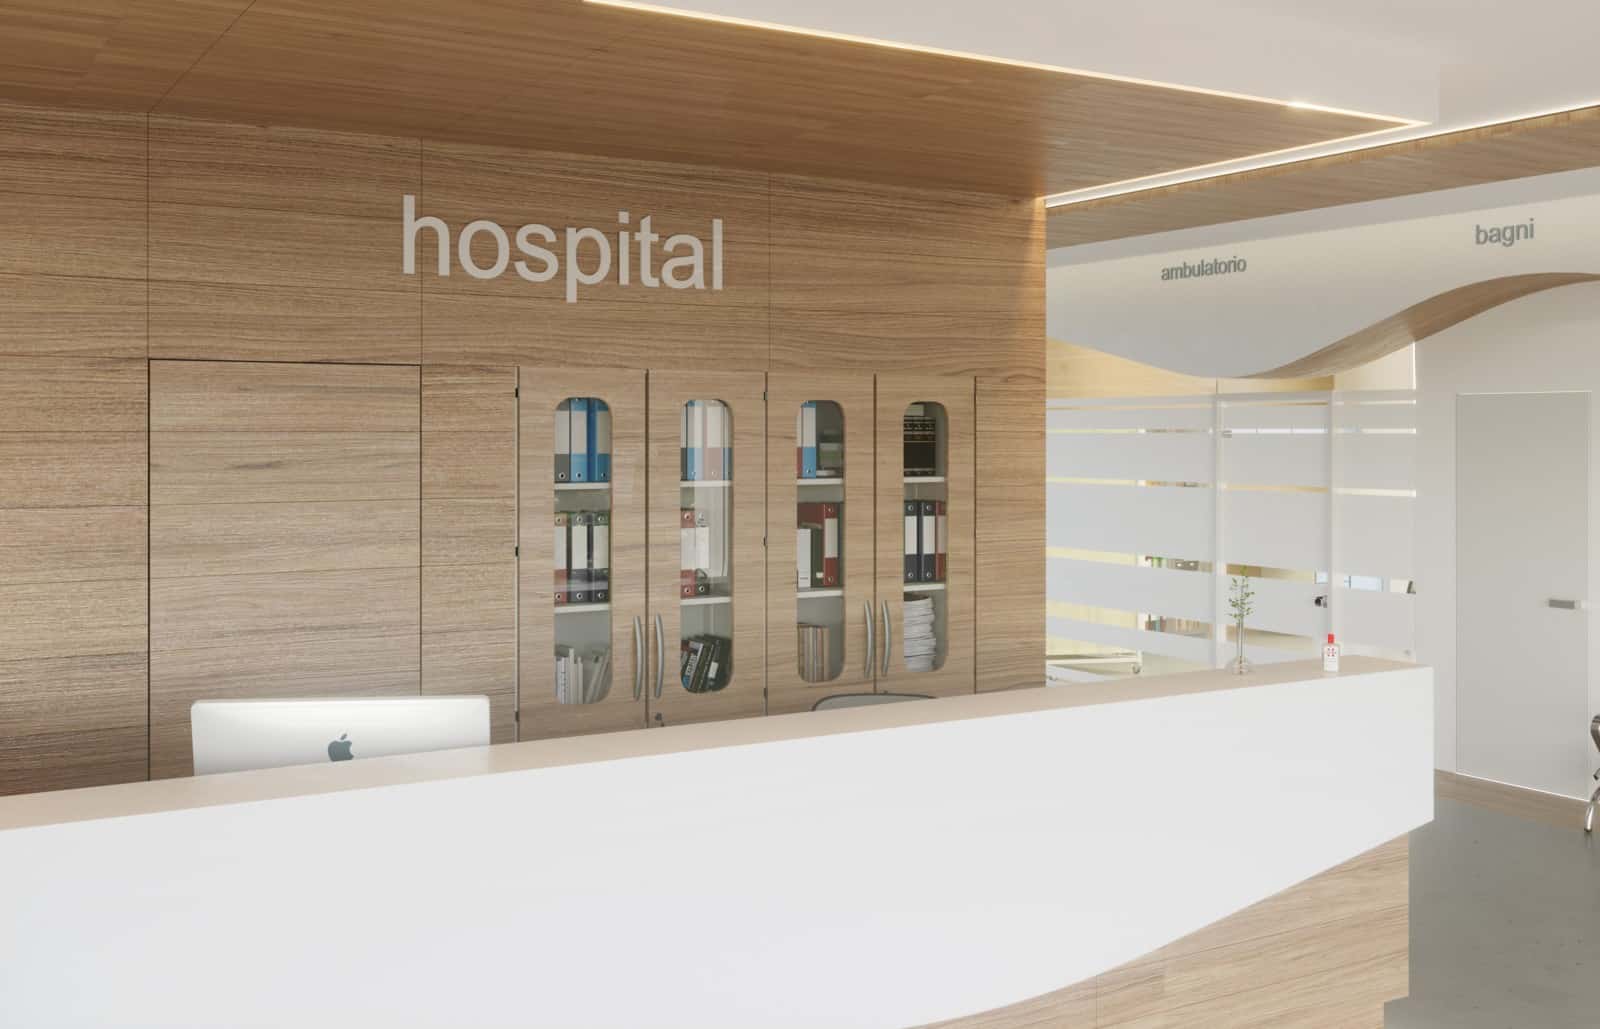 Zonta reception ospedaliera con bancone in legno e parete attrezzata